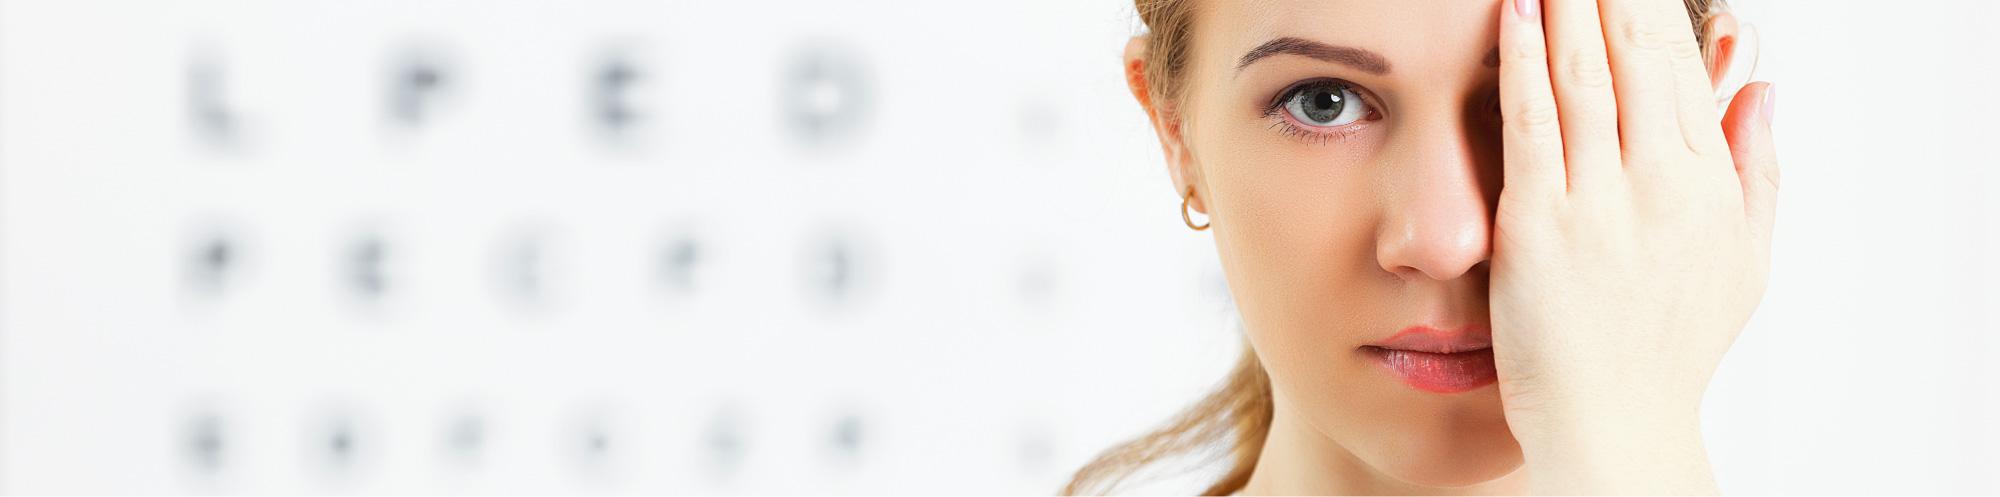 Unsere Geräte - Augenarztpraxis Buchen